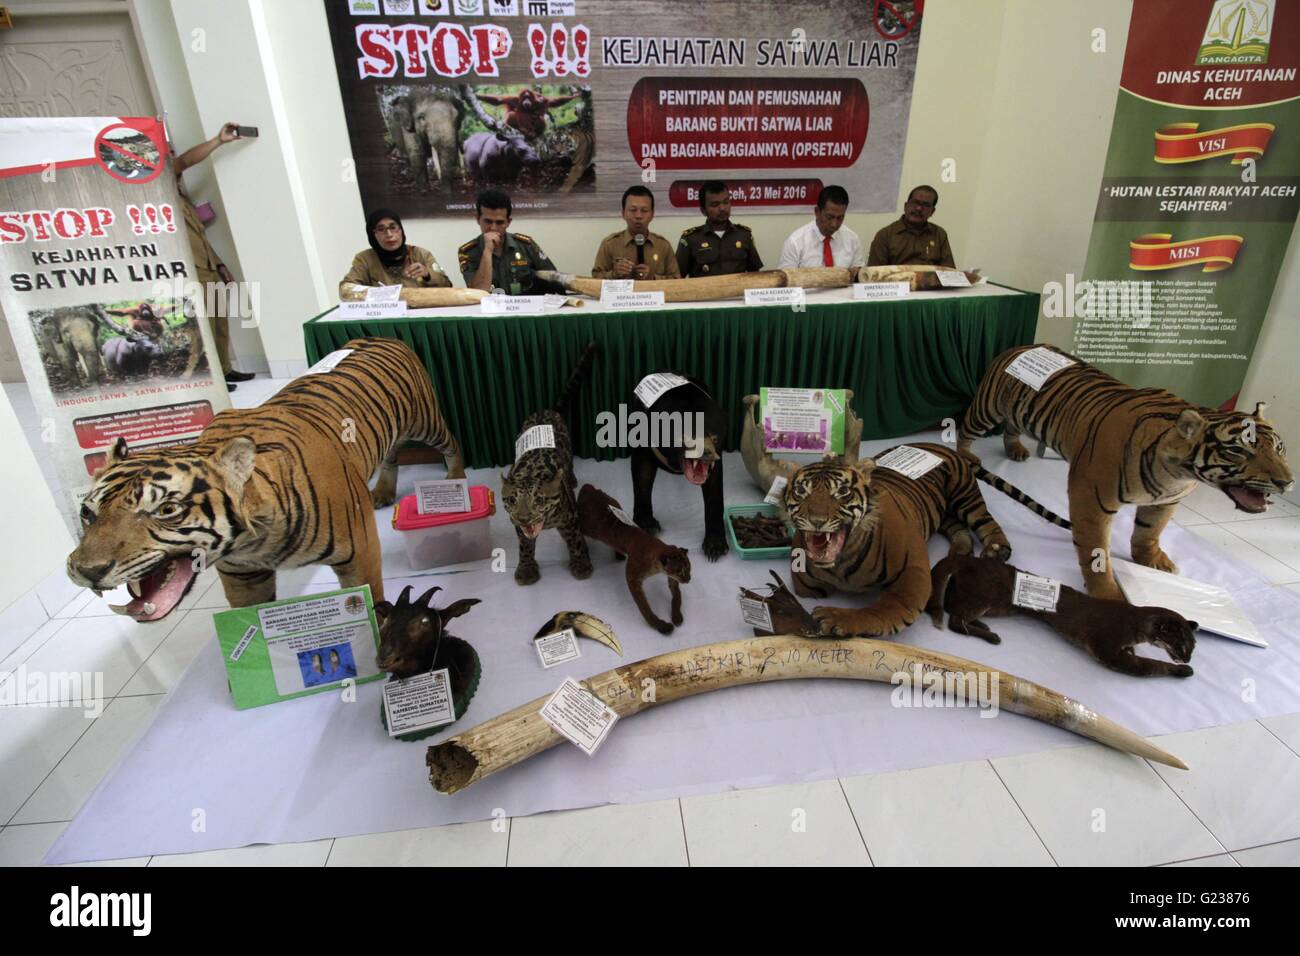 L'Aceh. 23 mai, 2016. Photo prise le 23 mai 2016 montre quelques produits animaux sauvages confisqués affichés au bureau du ministère de la foresterie d'Aceh dans la bande d'Aceh, province d'Aceh, en Indonésie. Les articles illégaux ont été confisqués à des braconniers d'animaux sauvages animaux sauvages et illégales des négociants en Aceh comme gouvernement indonésien continue de lutter contre le commerce illégal des animaux sauvages sur le marché noir. Credit : Junaidi/Xinhua/Alamy Live News Banque D'Images